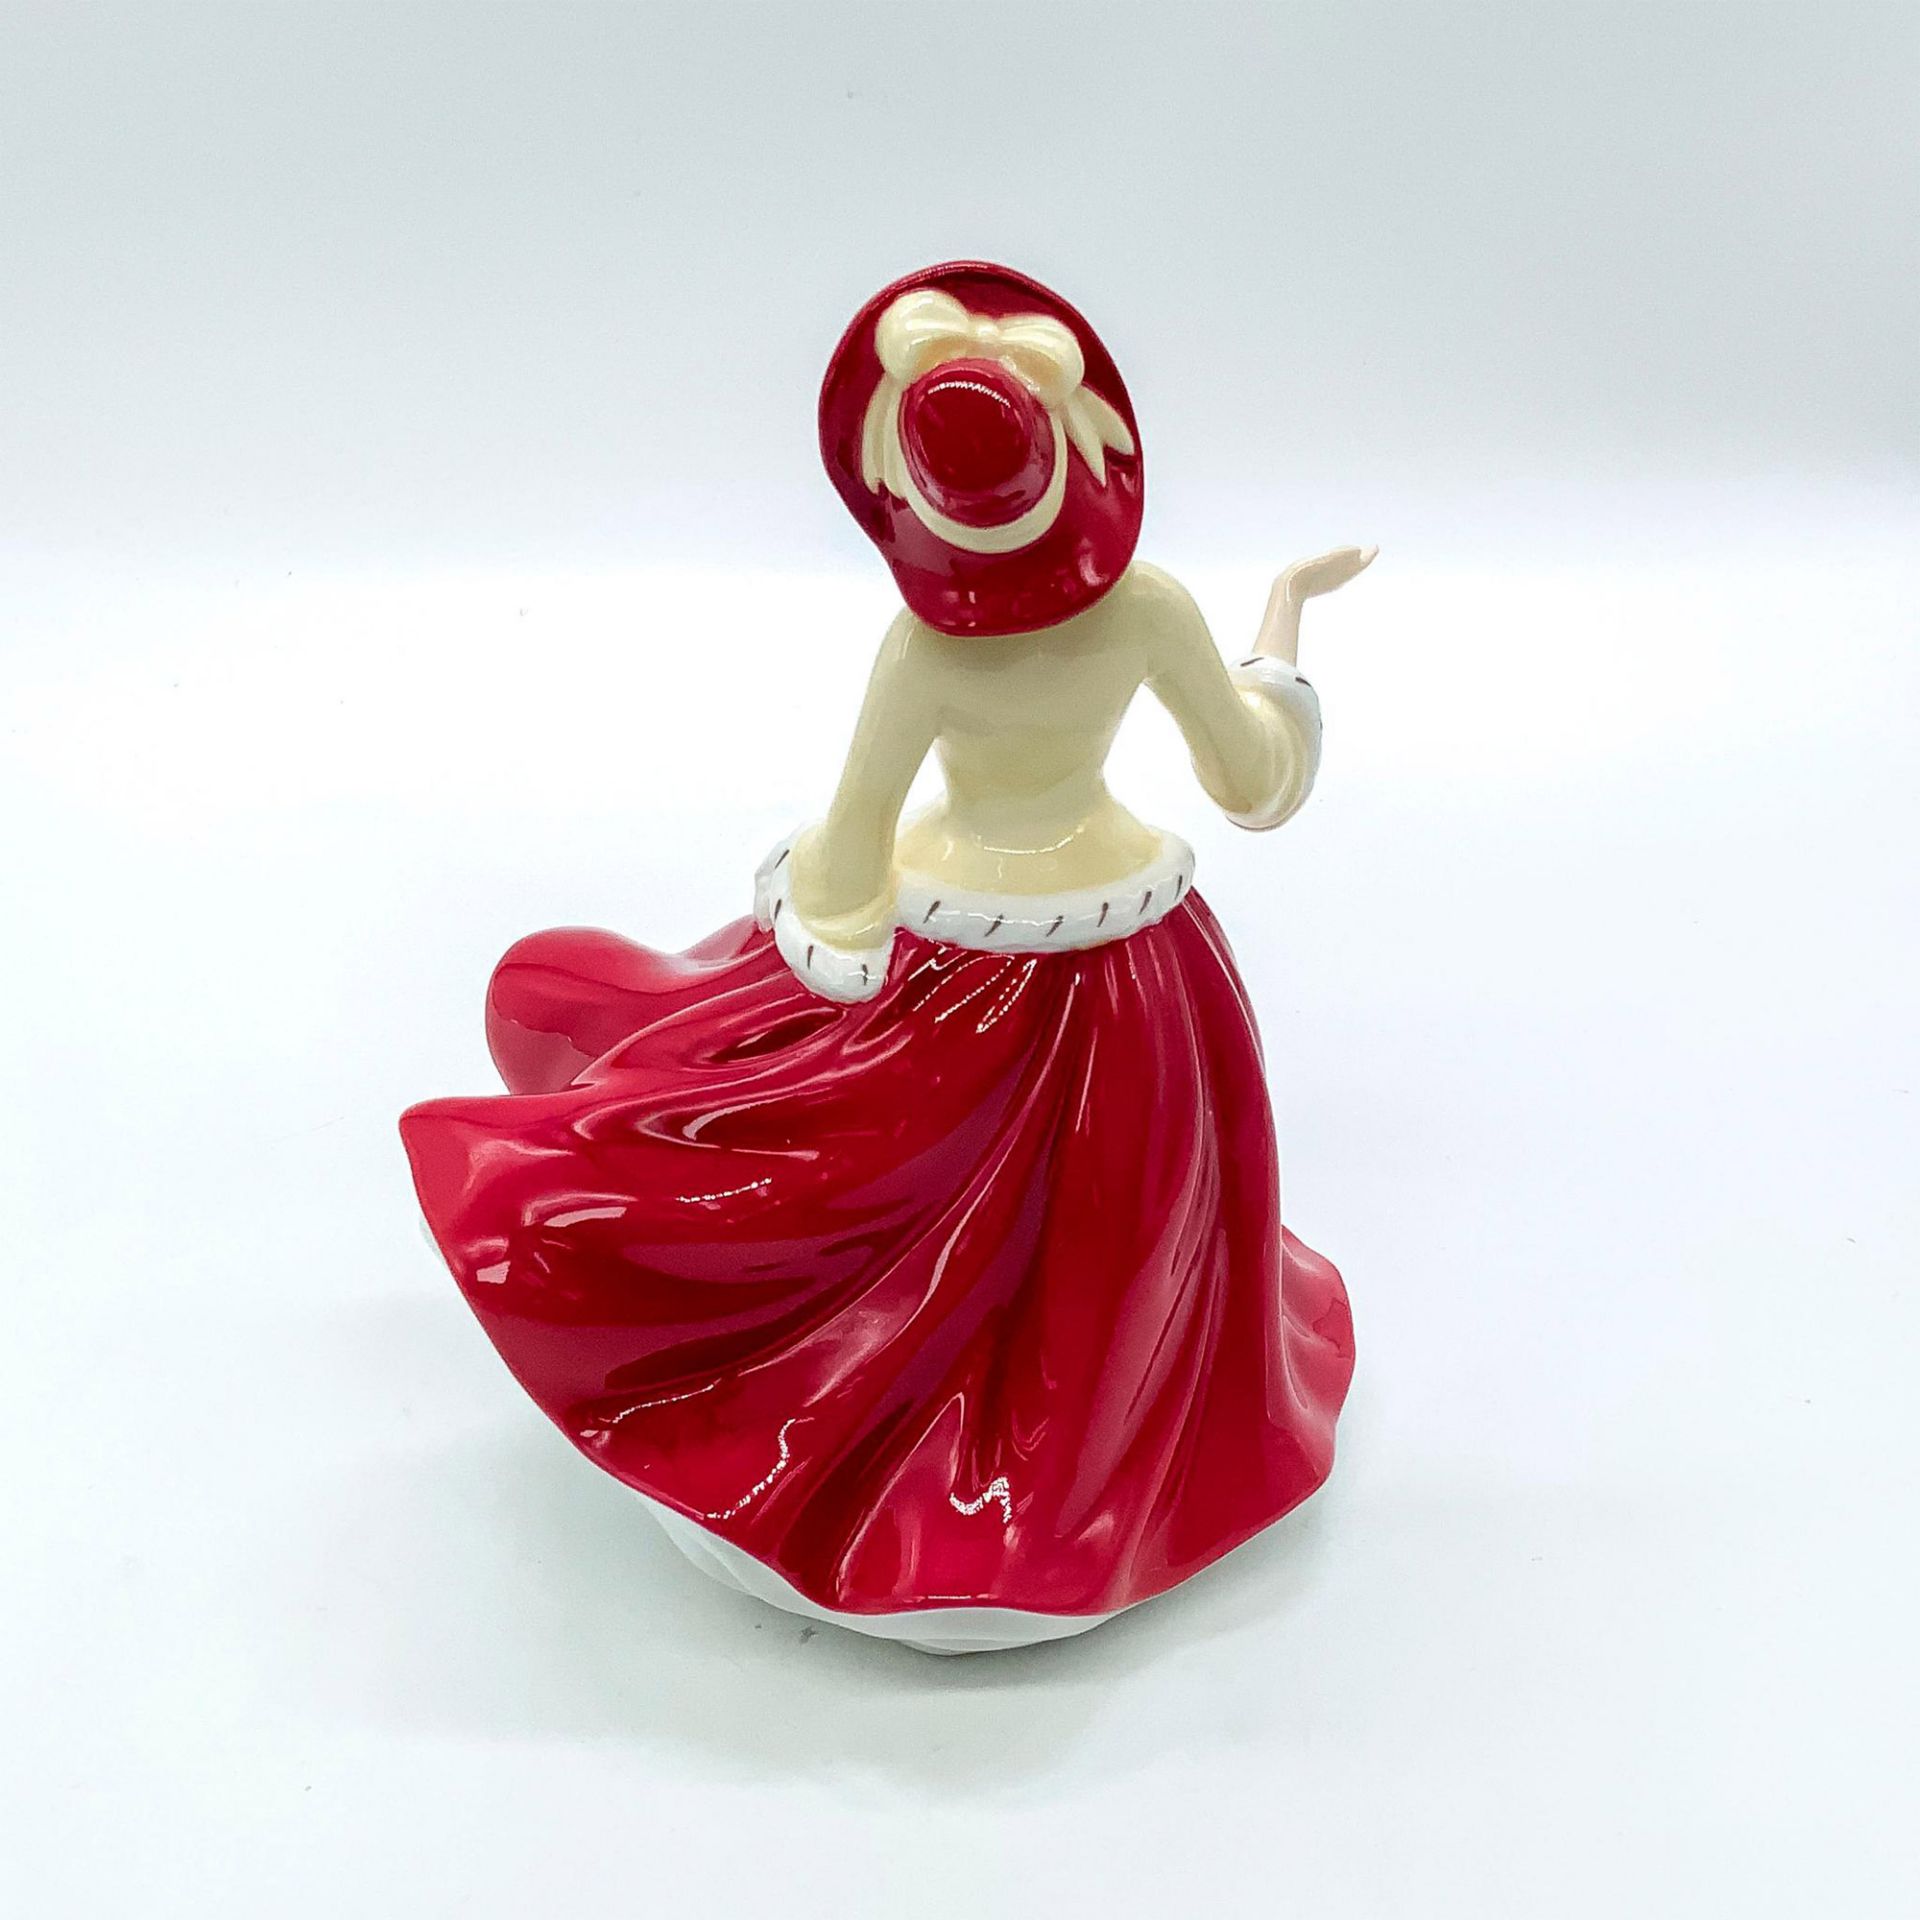 Christmas Day 2009 PetiteHN5350 - Royal Doulton Figurine - Image 3 of 4